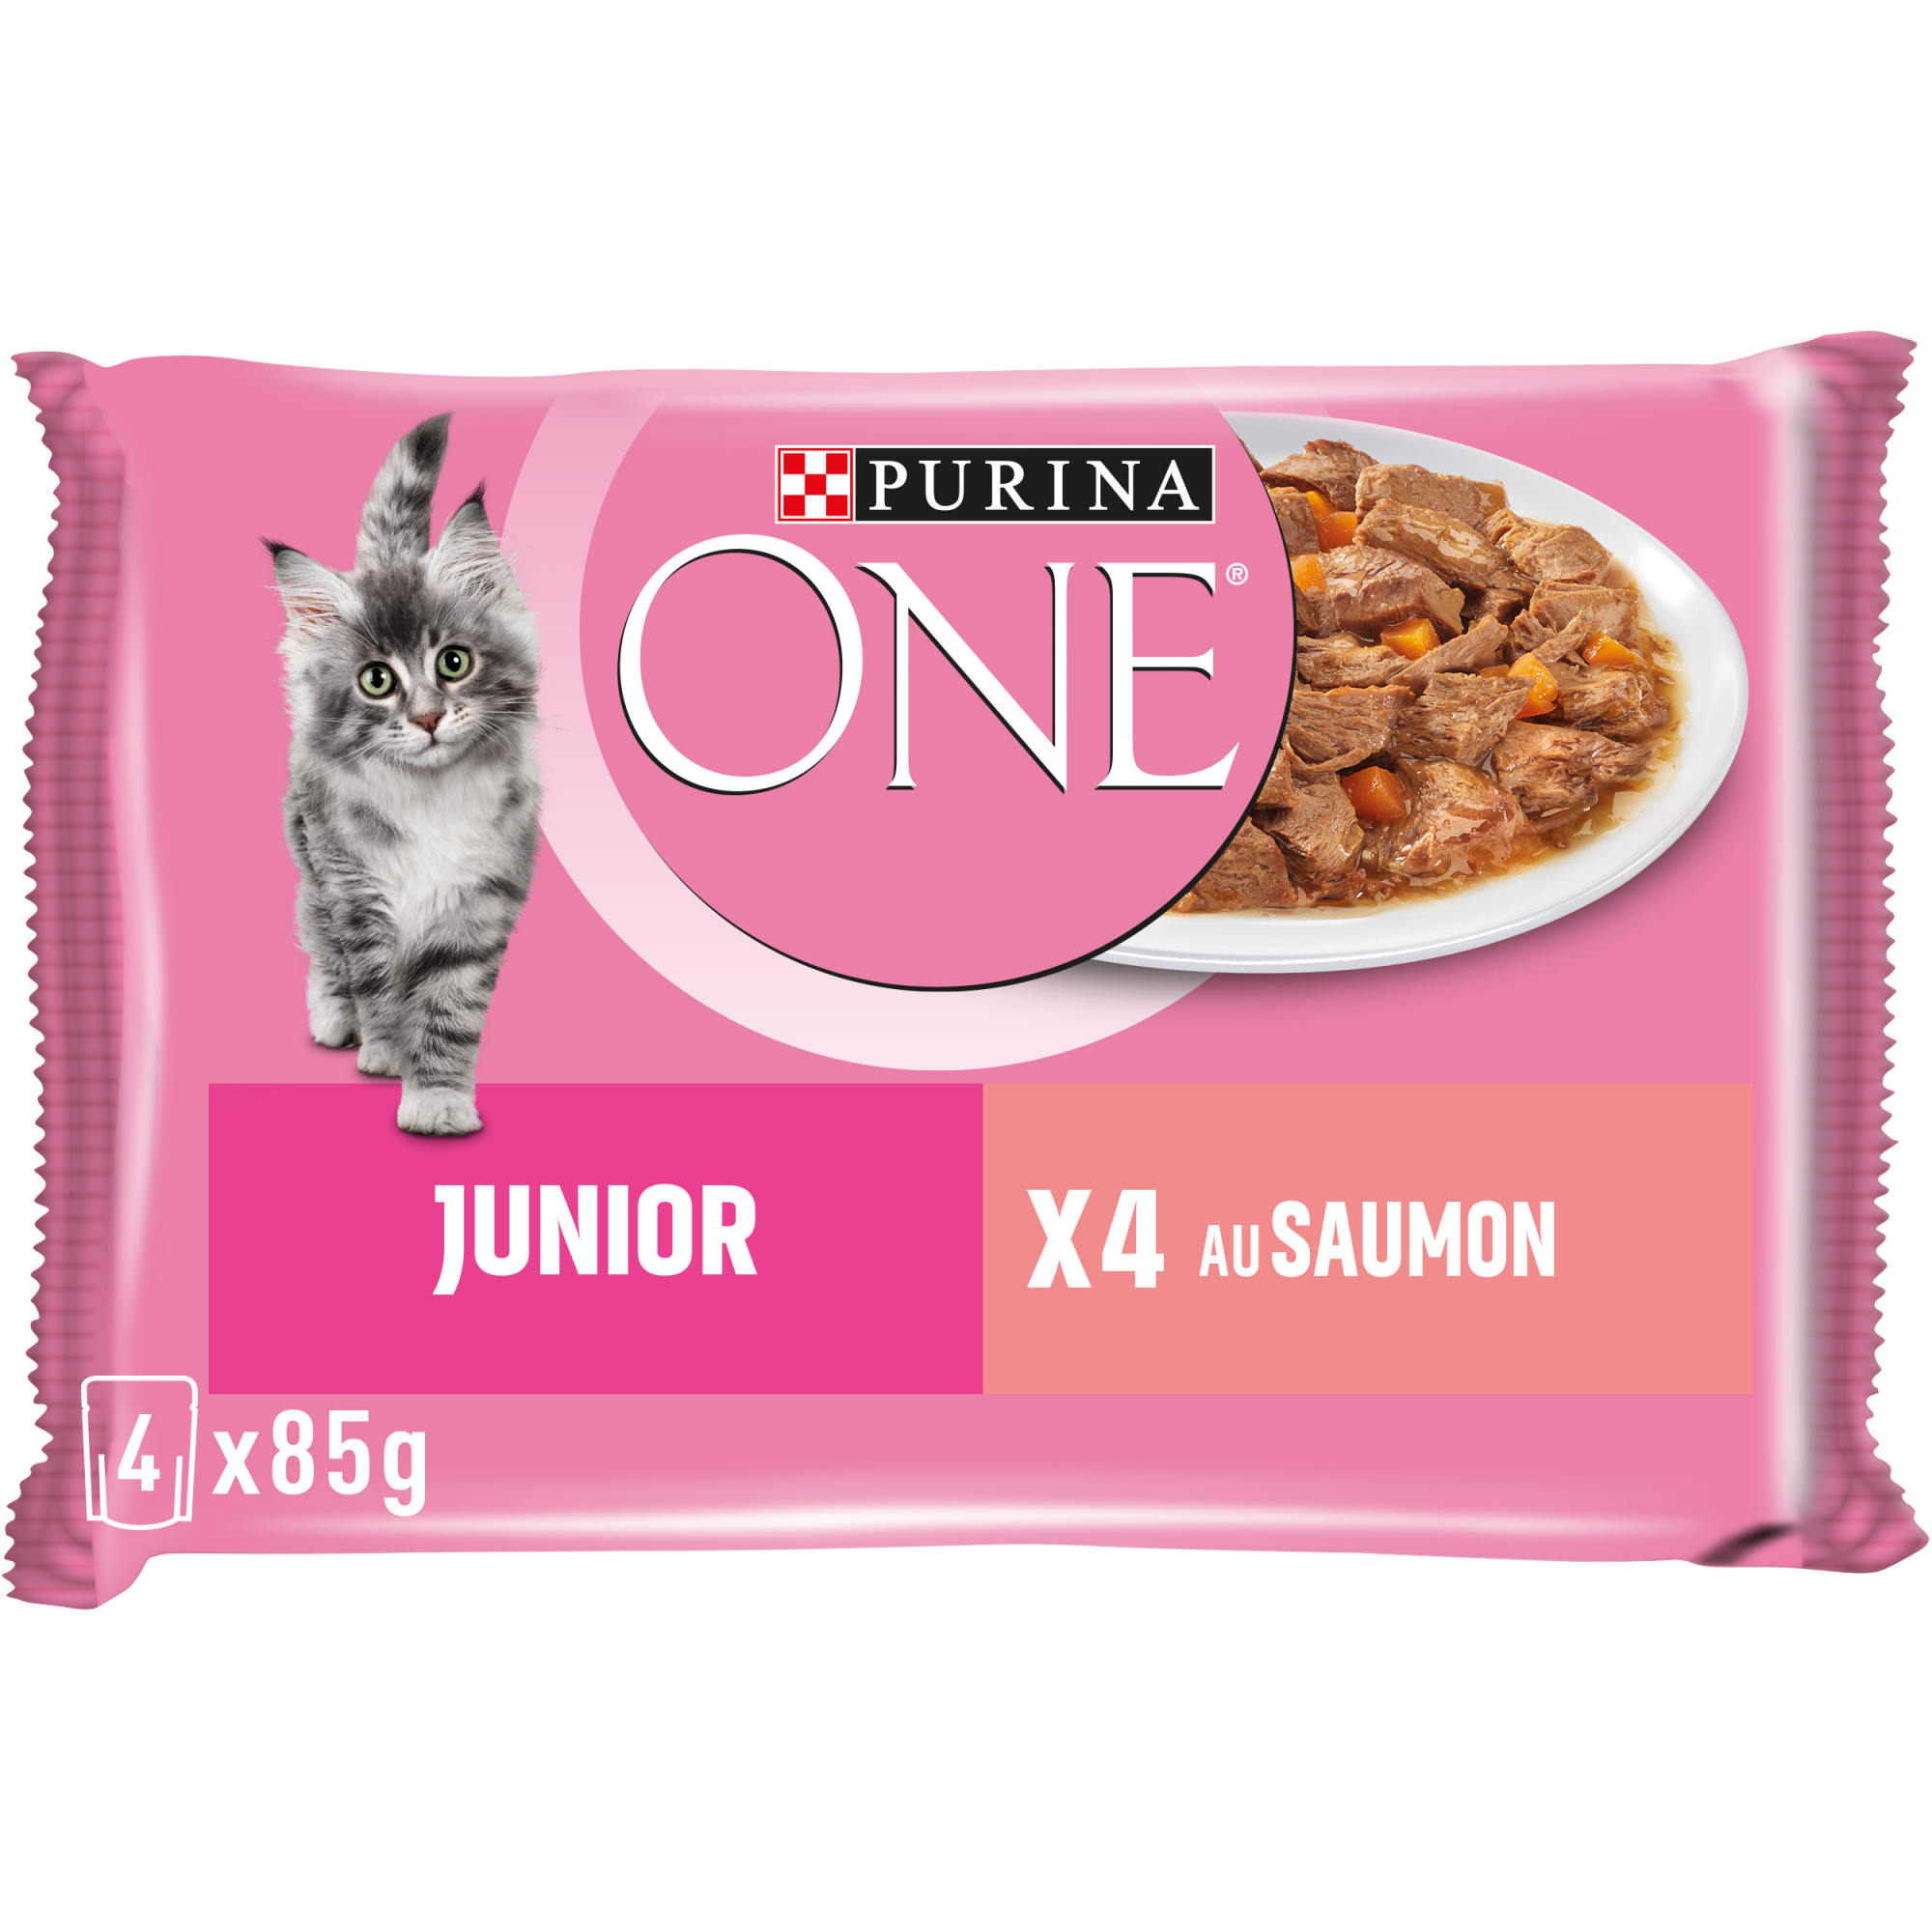 PURINA ONE Pâtée pour Chat Junior au Saumon